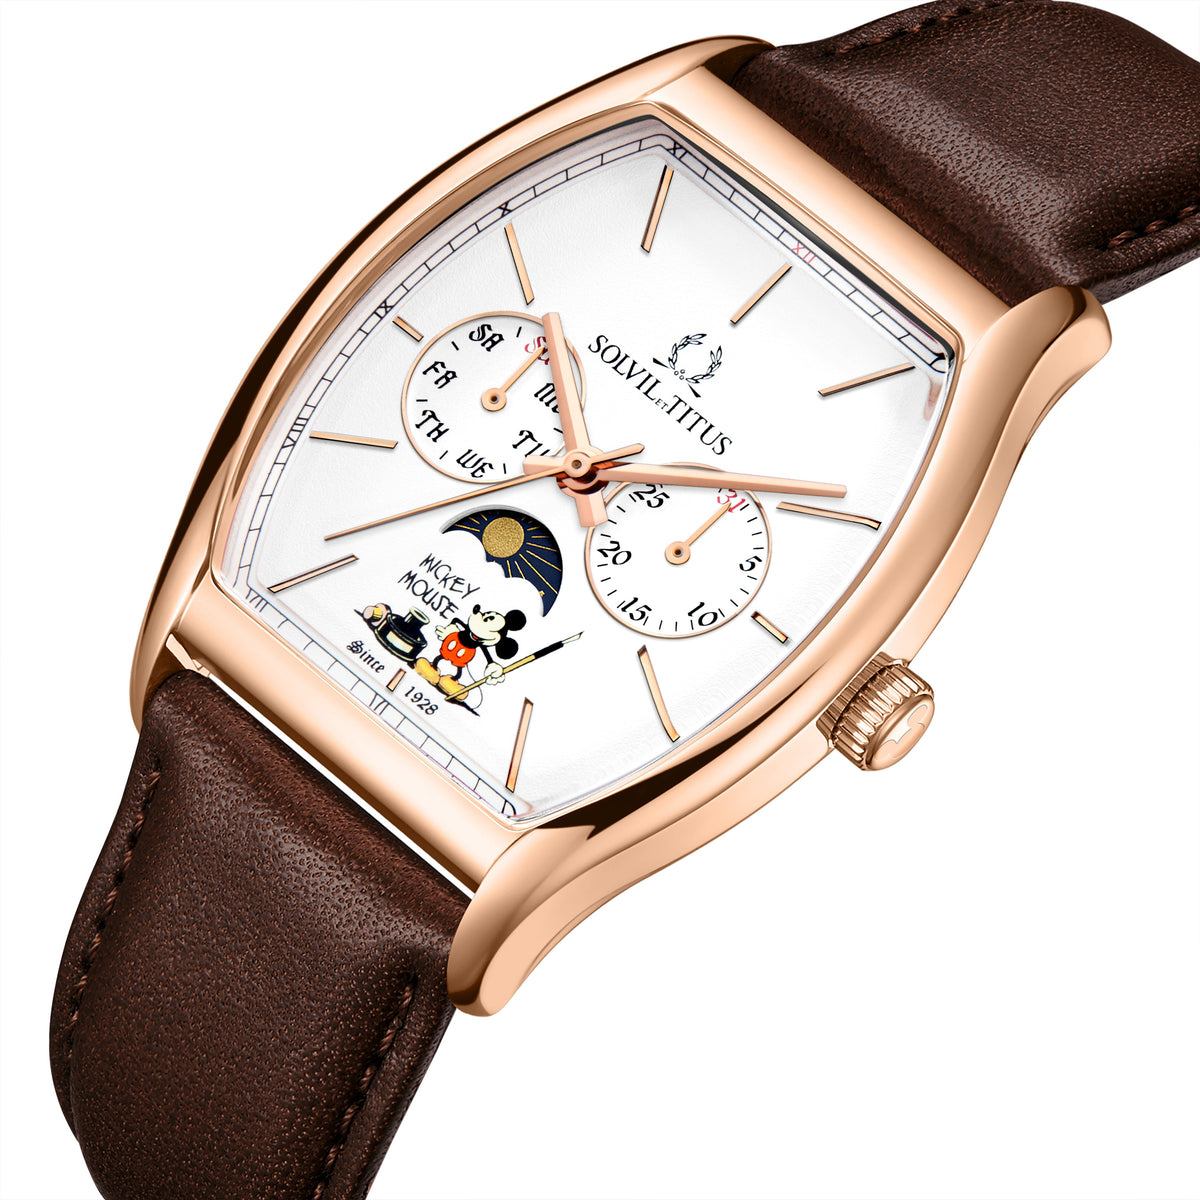 คอลเลกชัน Barista “Mickey Mouse 95th Anniversary” นาฬิกาผู้ชาย ลิมิเตดอิดิชัน เรือนสีโรสโกลด์ มัลติฟังก์ชัน บอกกลางวัน-กลางคืน ระบบควอตซ์ สายหนัง ขนาดตัวเรือน 37 มม. (W06-03355-002)